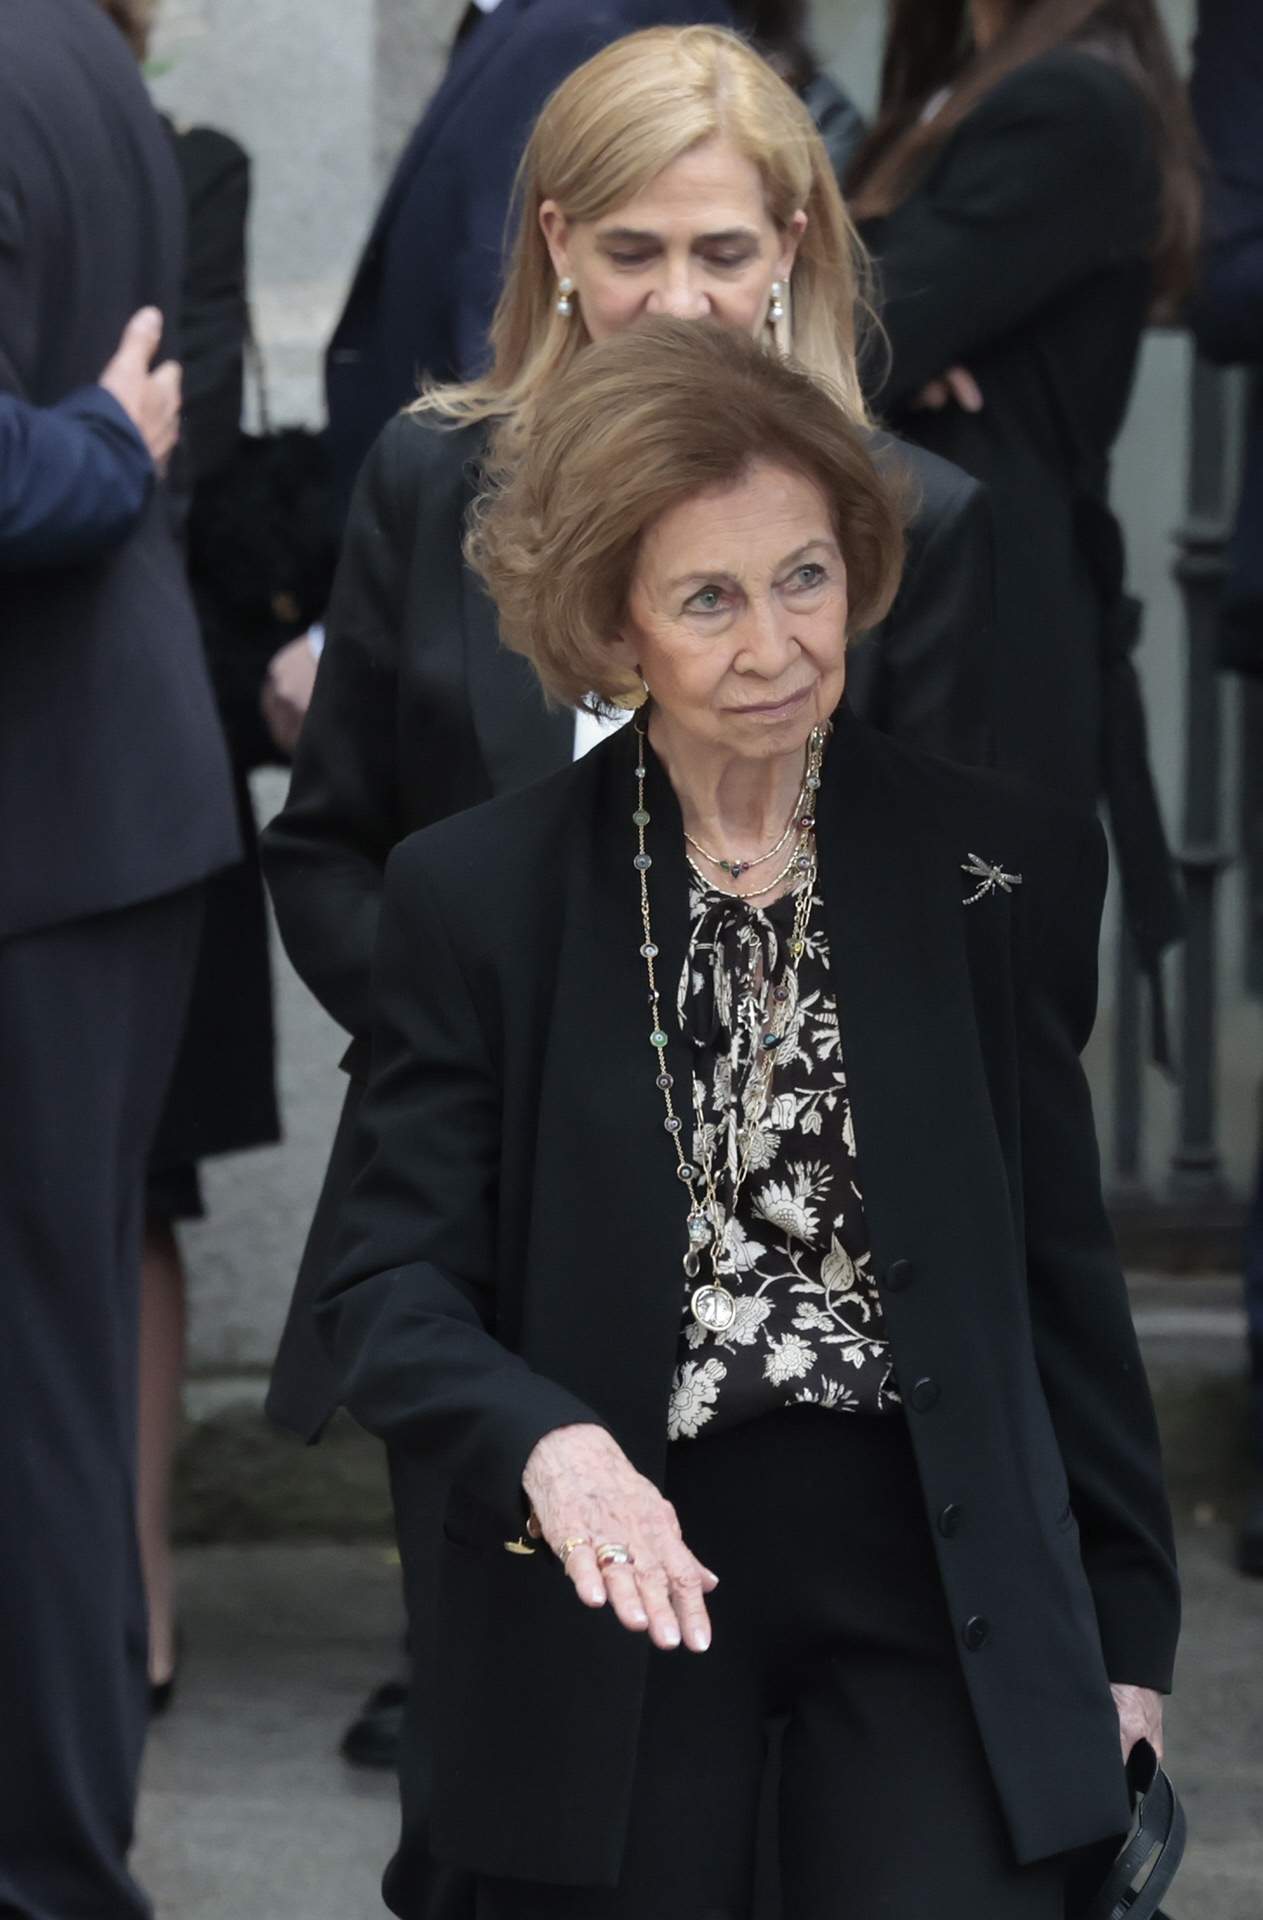 La reina Sofia ingressada d'urgència en plena nit, problemes de salut als 85 anys